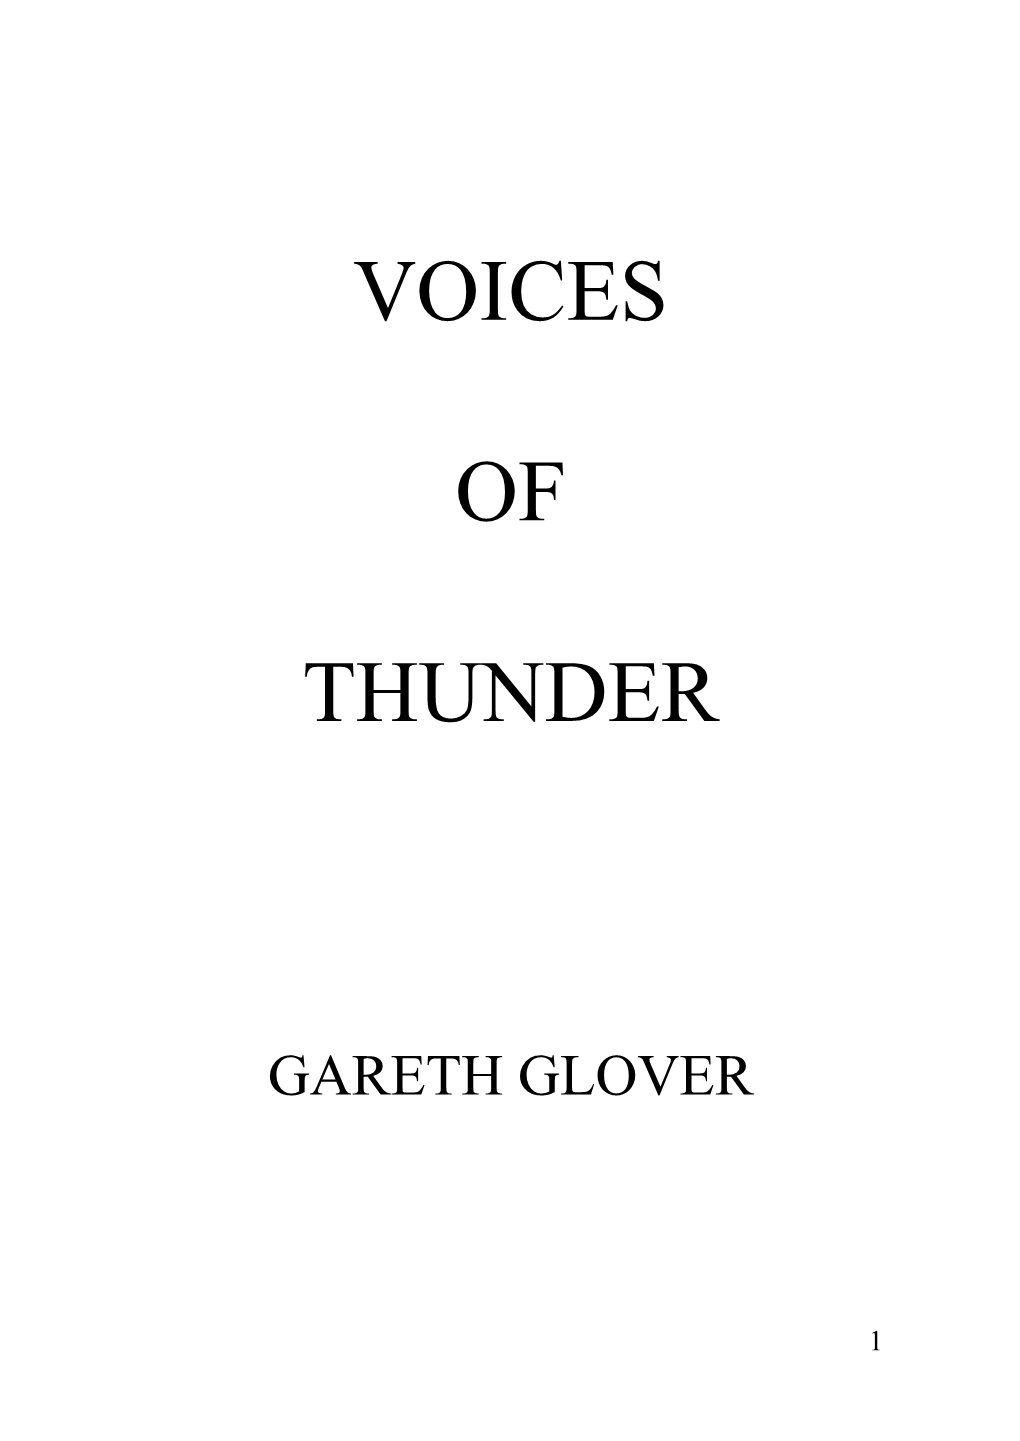 Gareth Glover